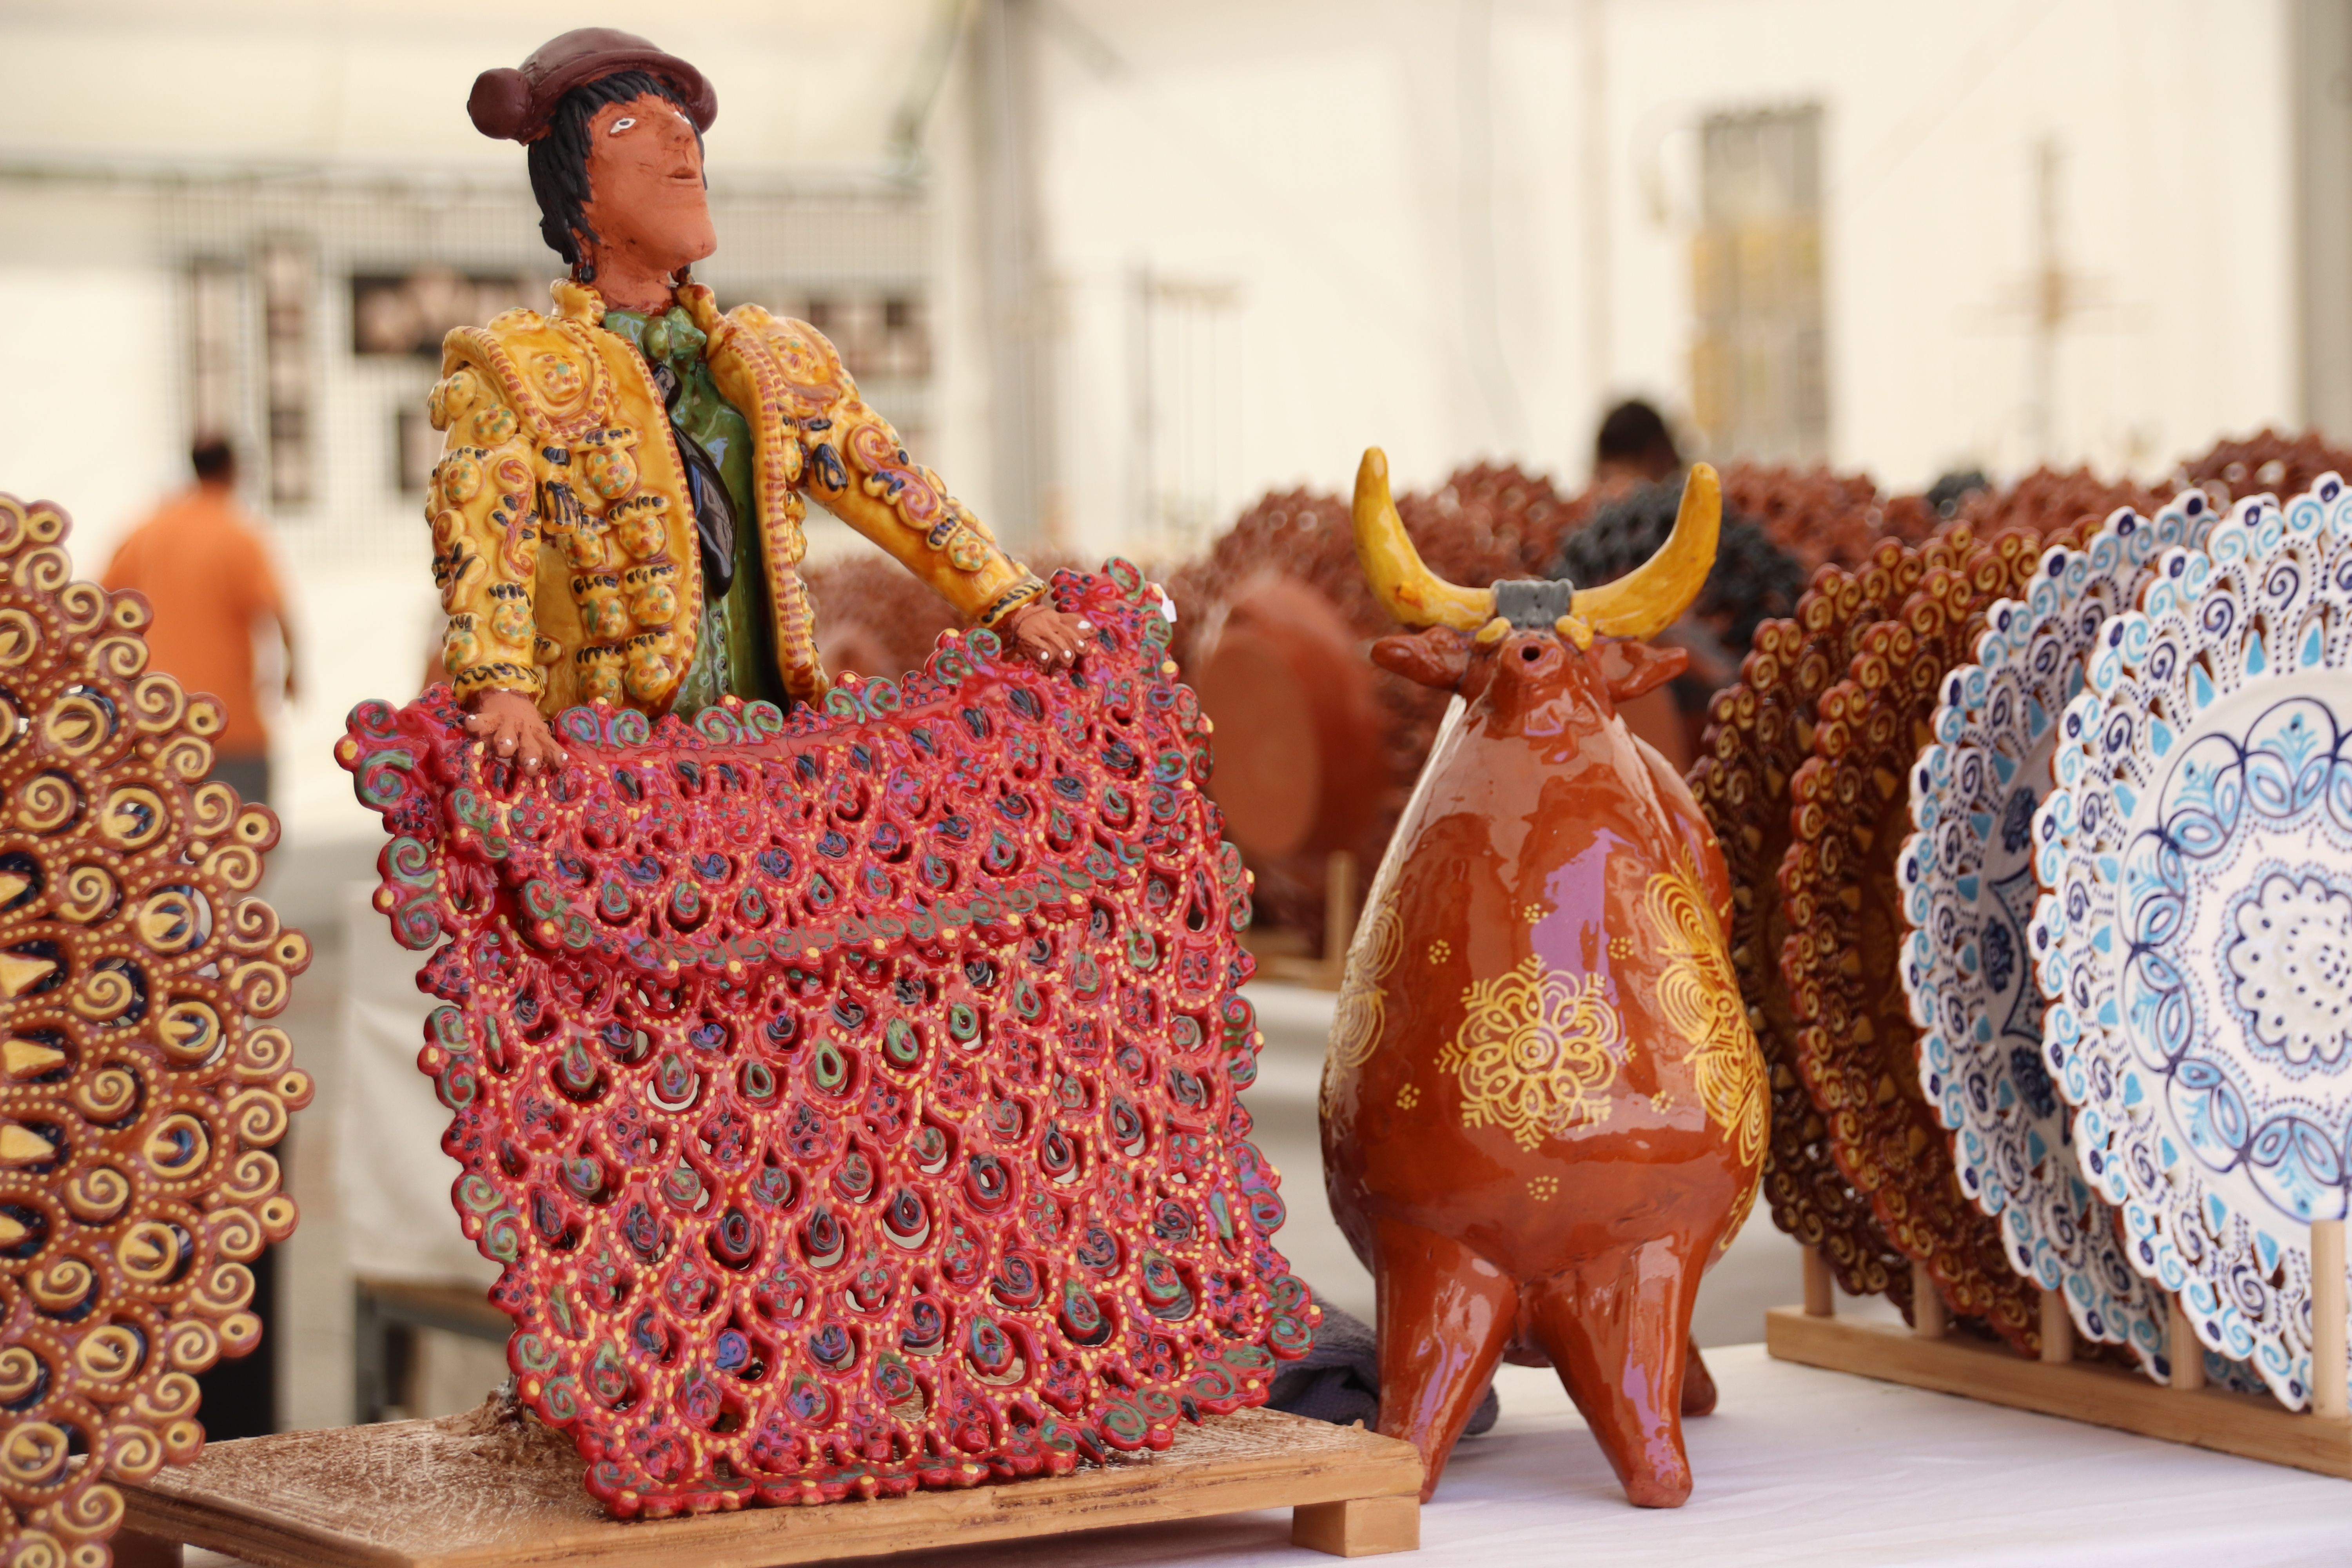 La plaza de Anaya acoge, hasta el próximo 22 de agosto, una nueva edición de la Feria del Barro, que reúne a 17 artesanos (1)